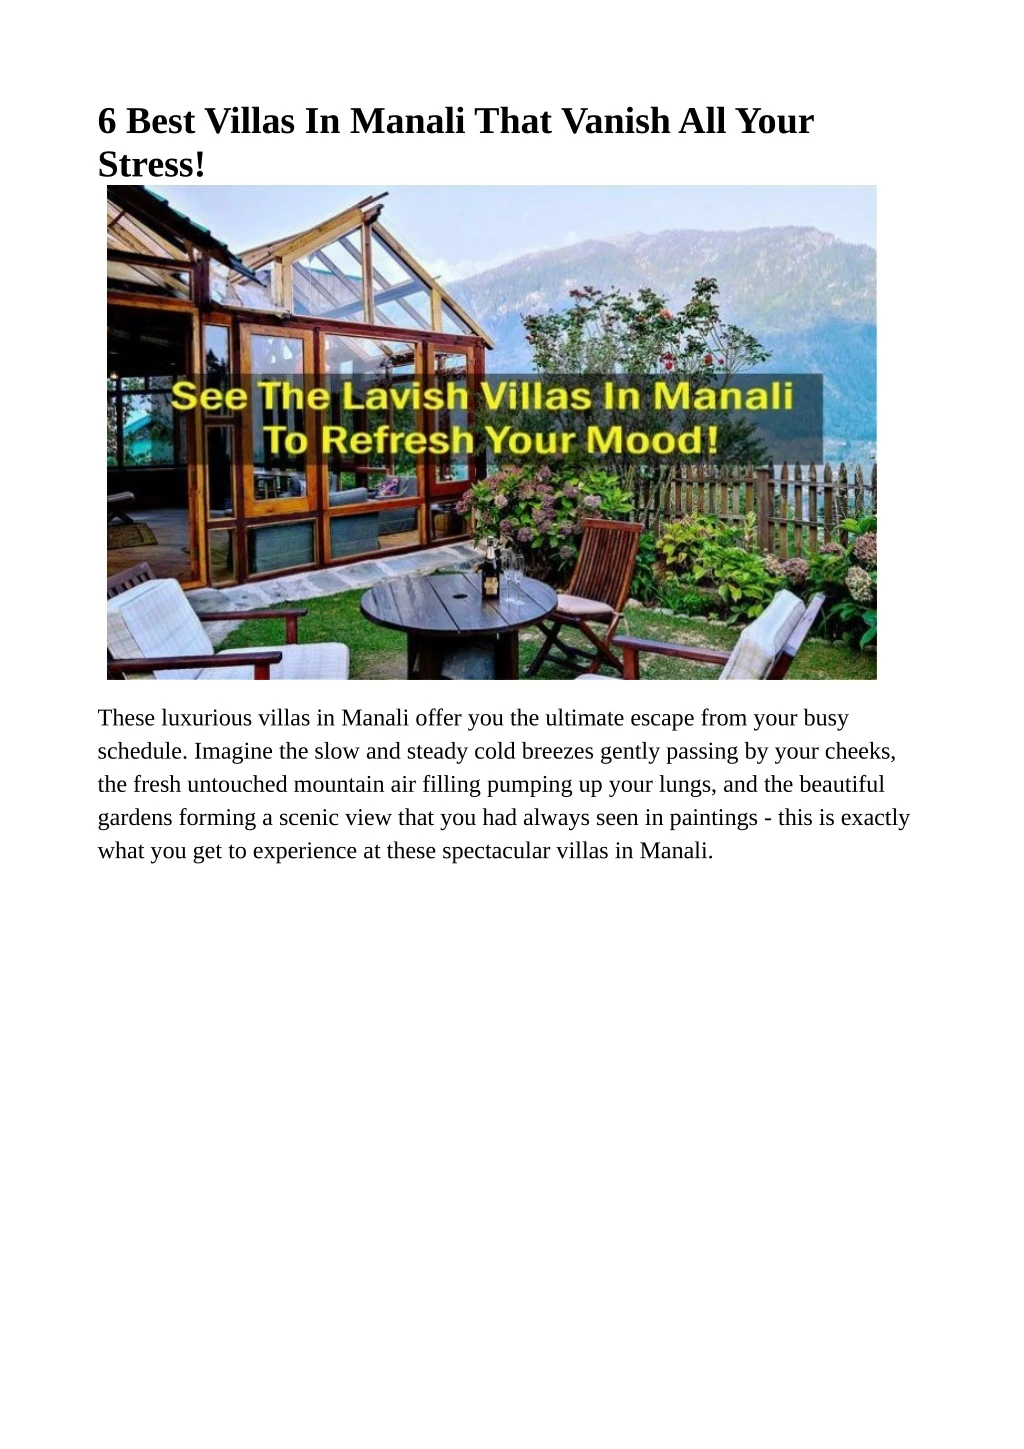 6 best villas in manali that vanish all your